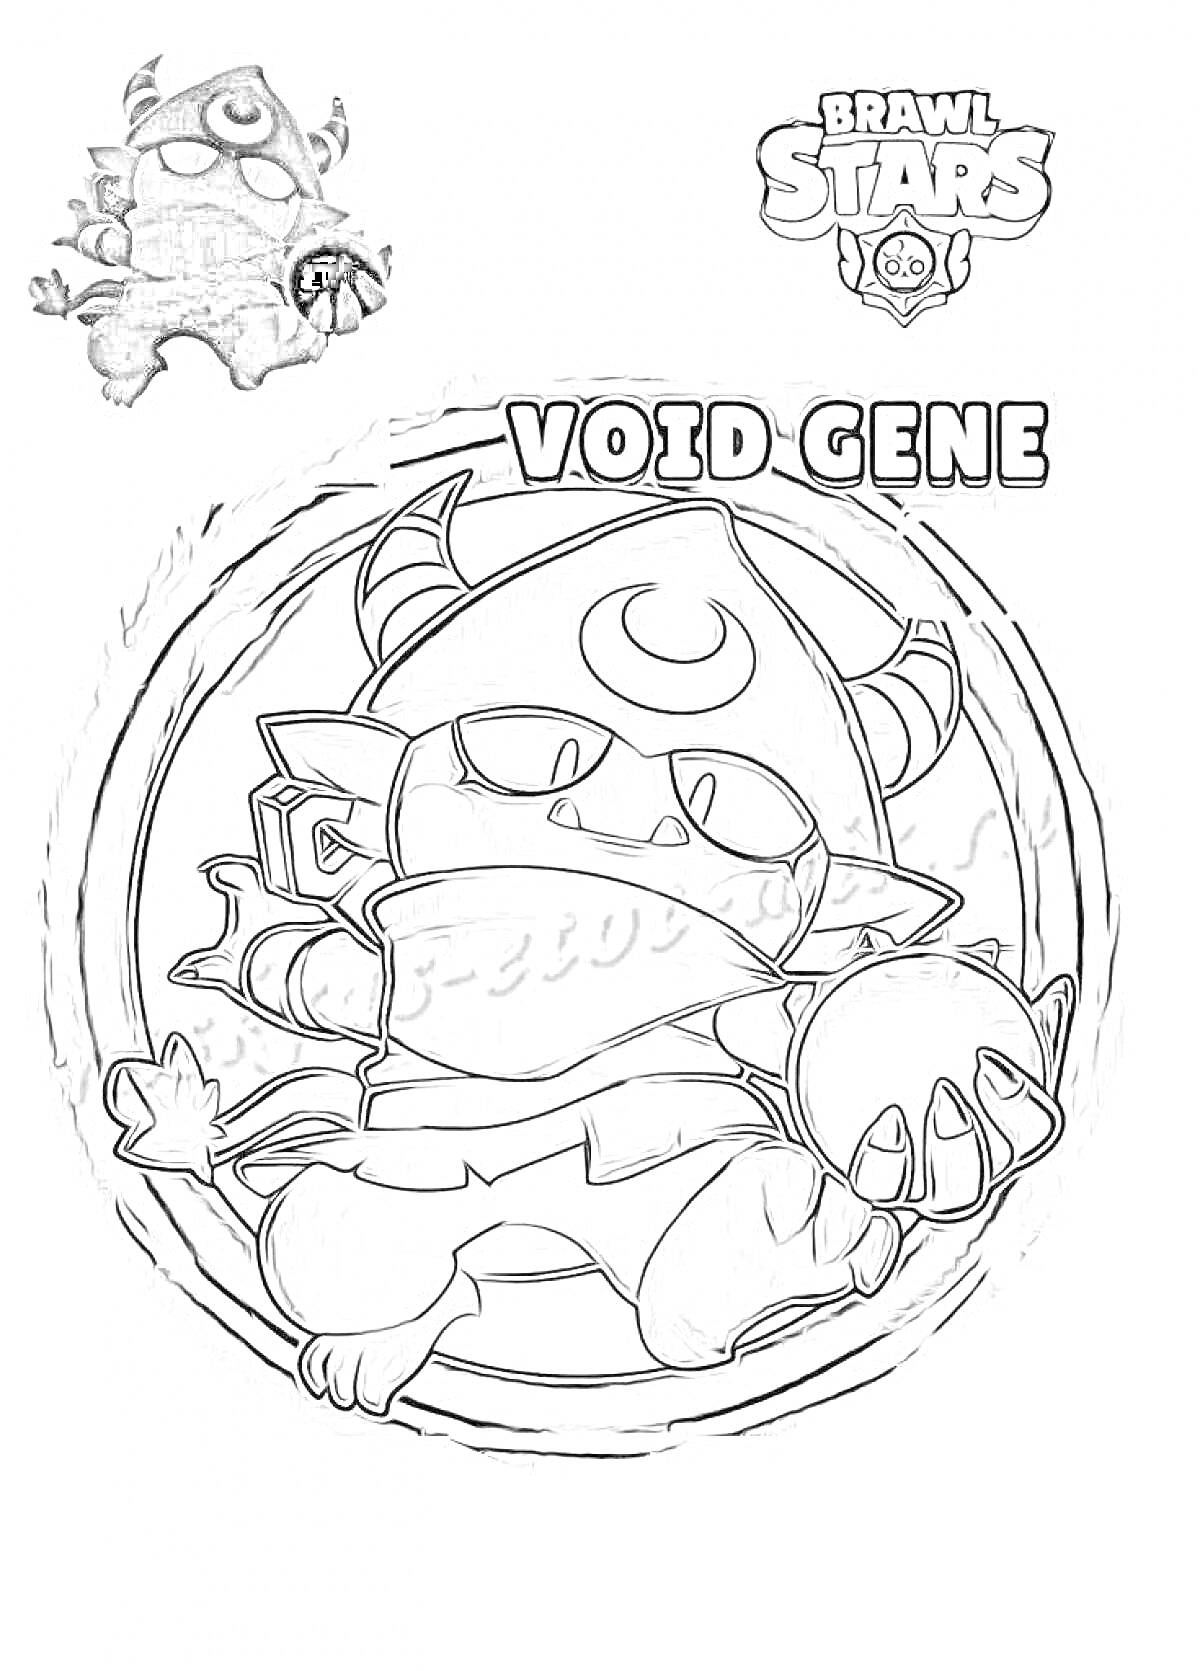 Раскраска Void Gene с созданием магического шара, рогами и костюмом с капюшоном.